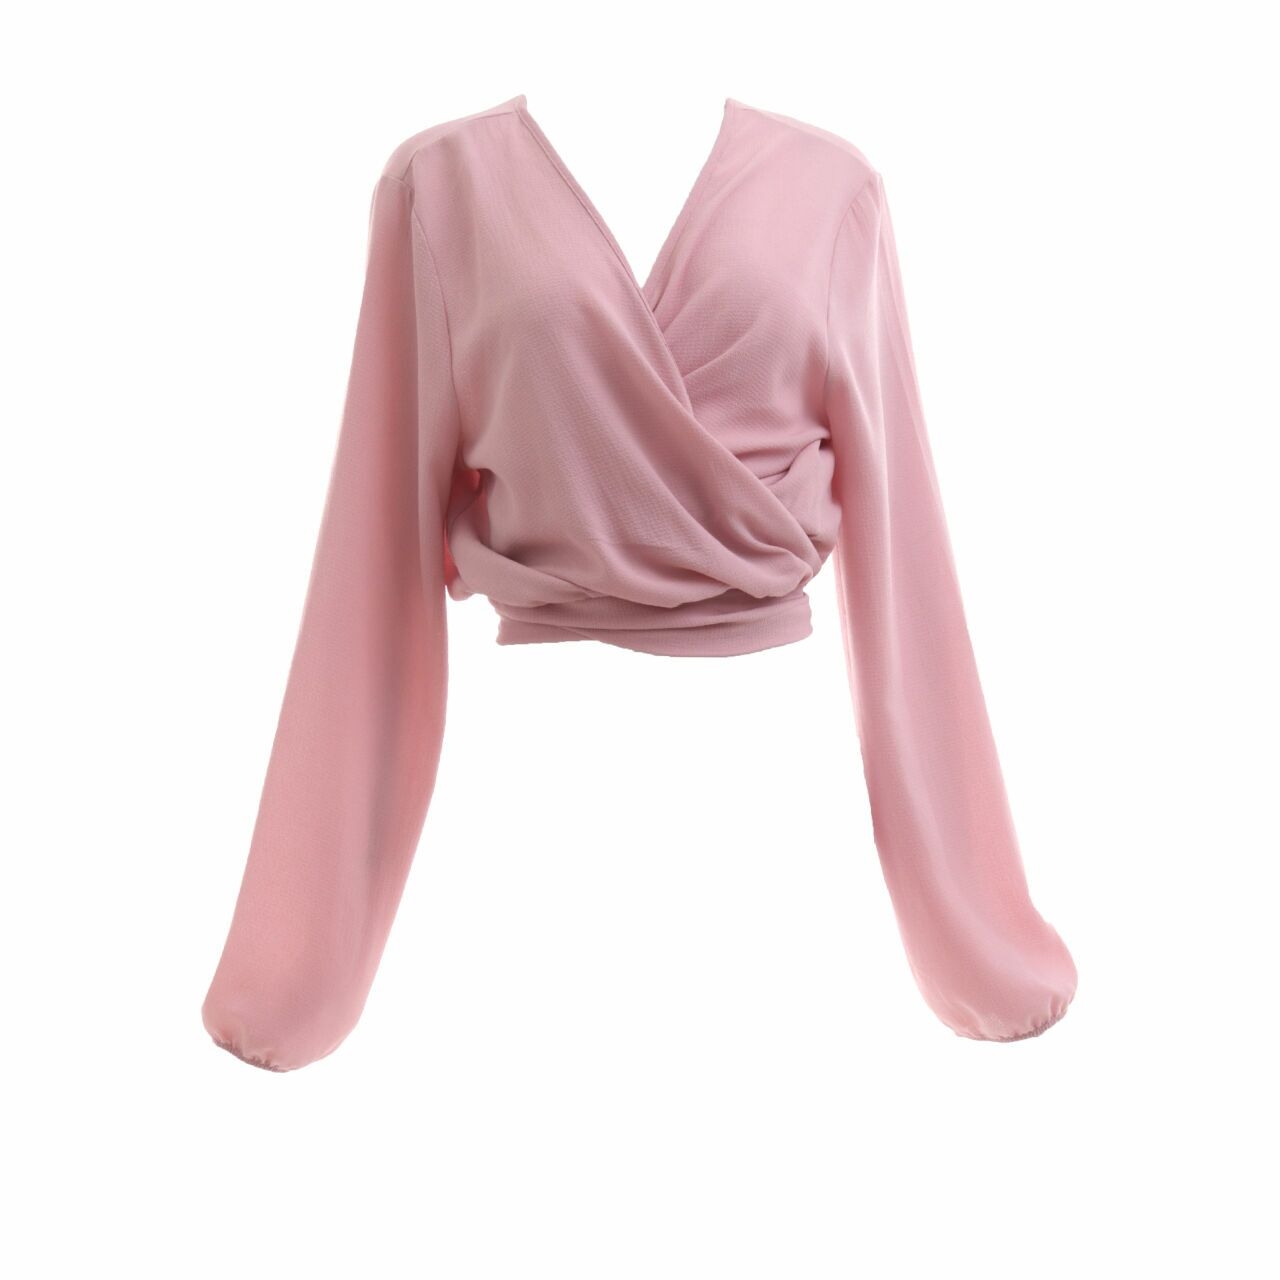 Fashion Nova Pink Outerwear